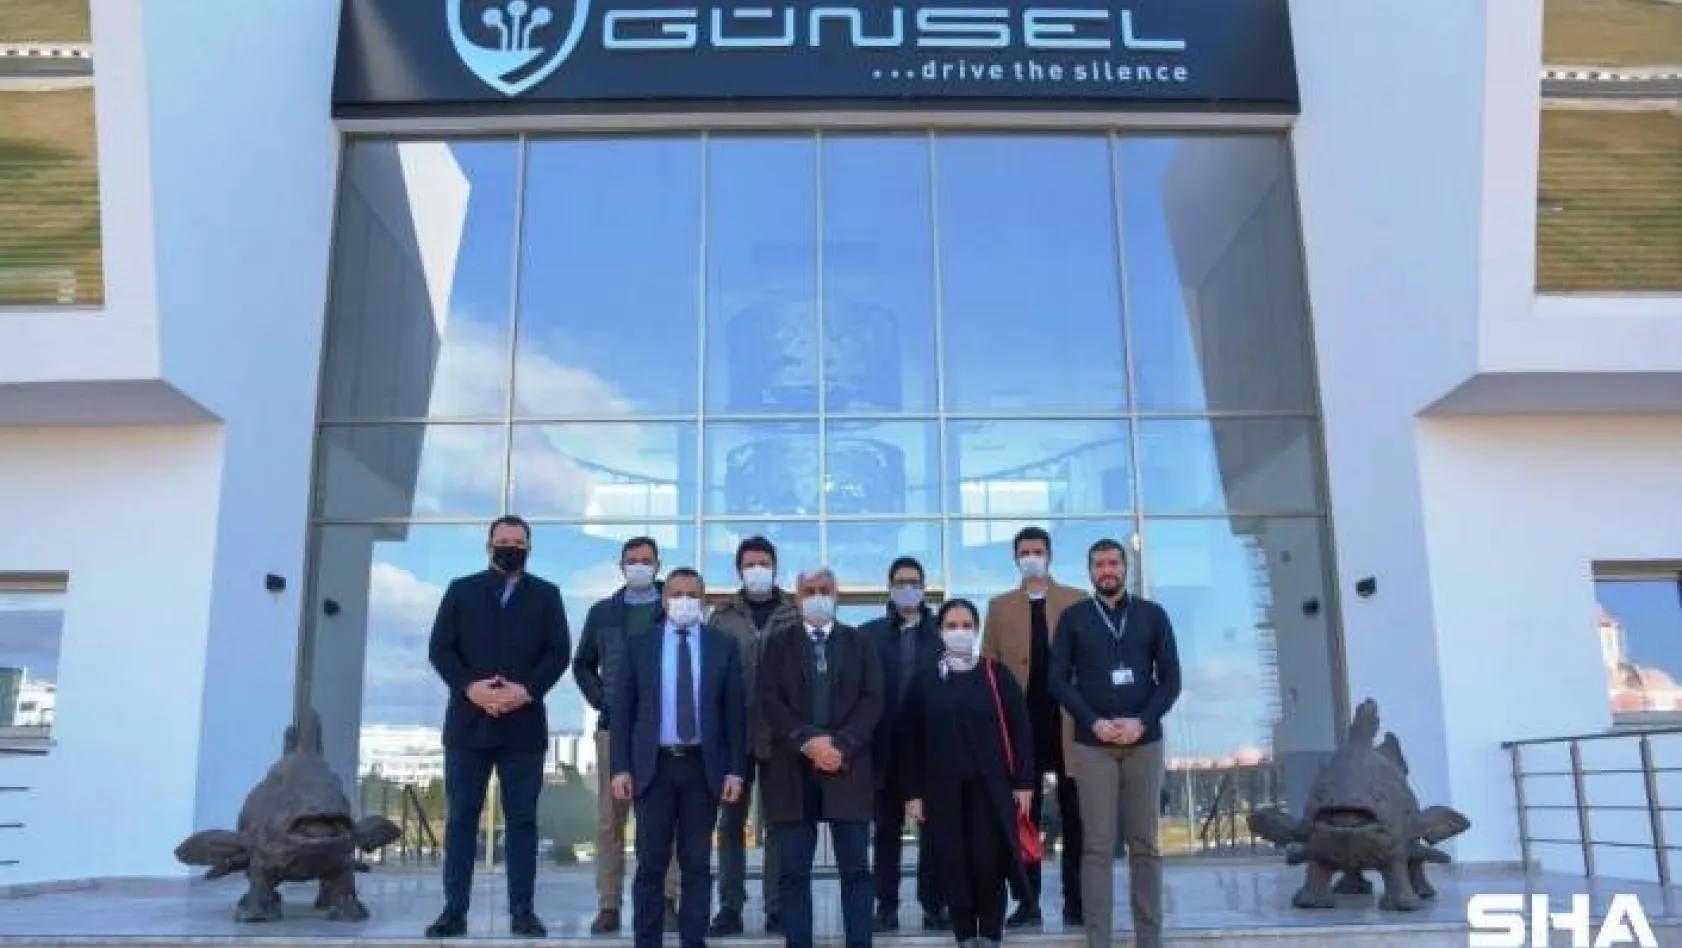 Kıbrıs Türk Makina Mühendisleri Odası'ndan Günsel'e tam not